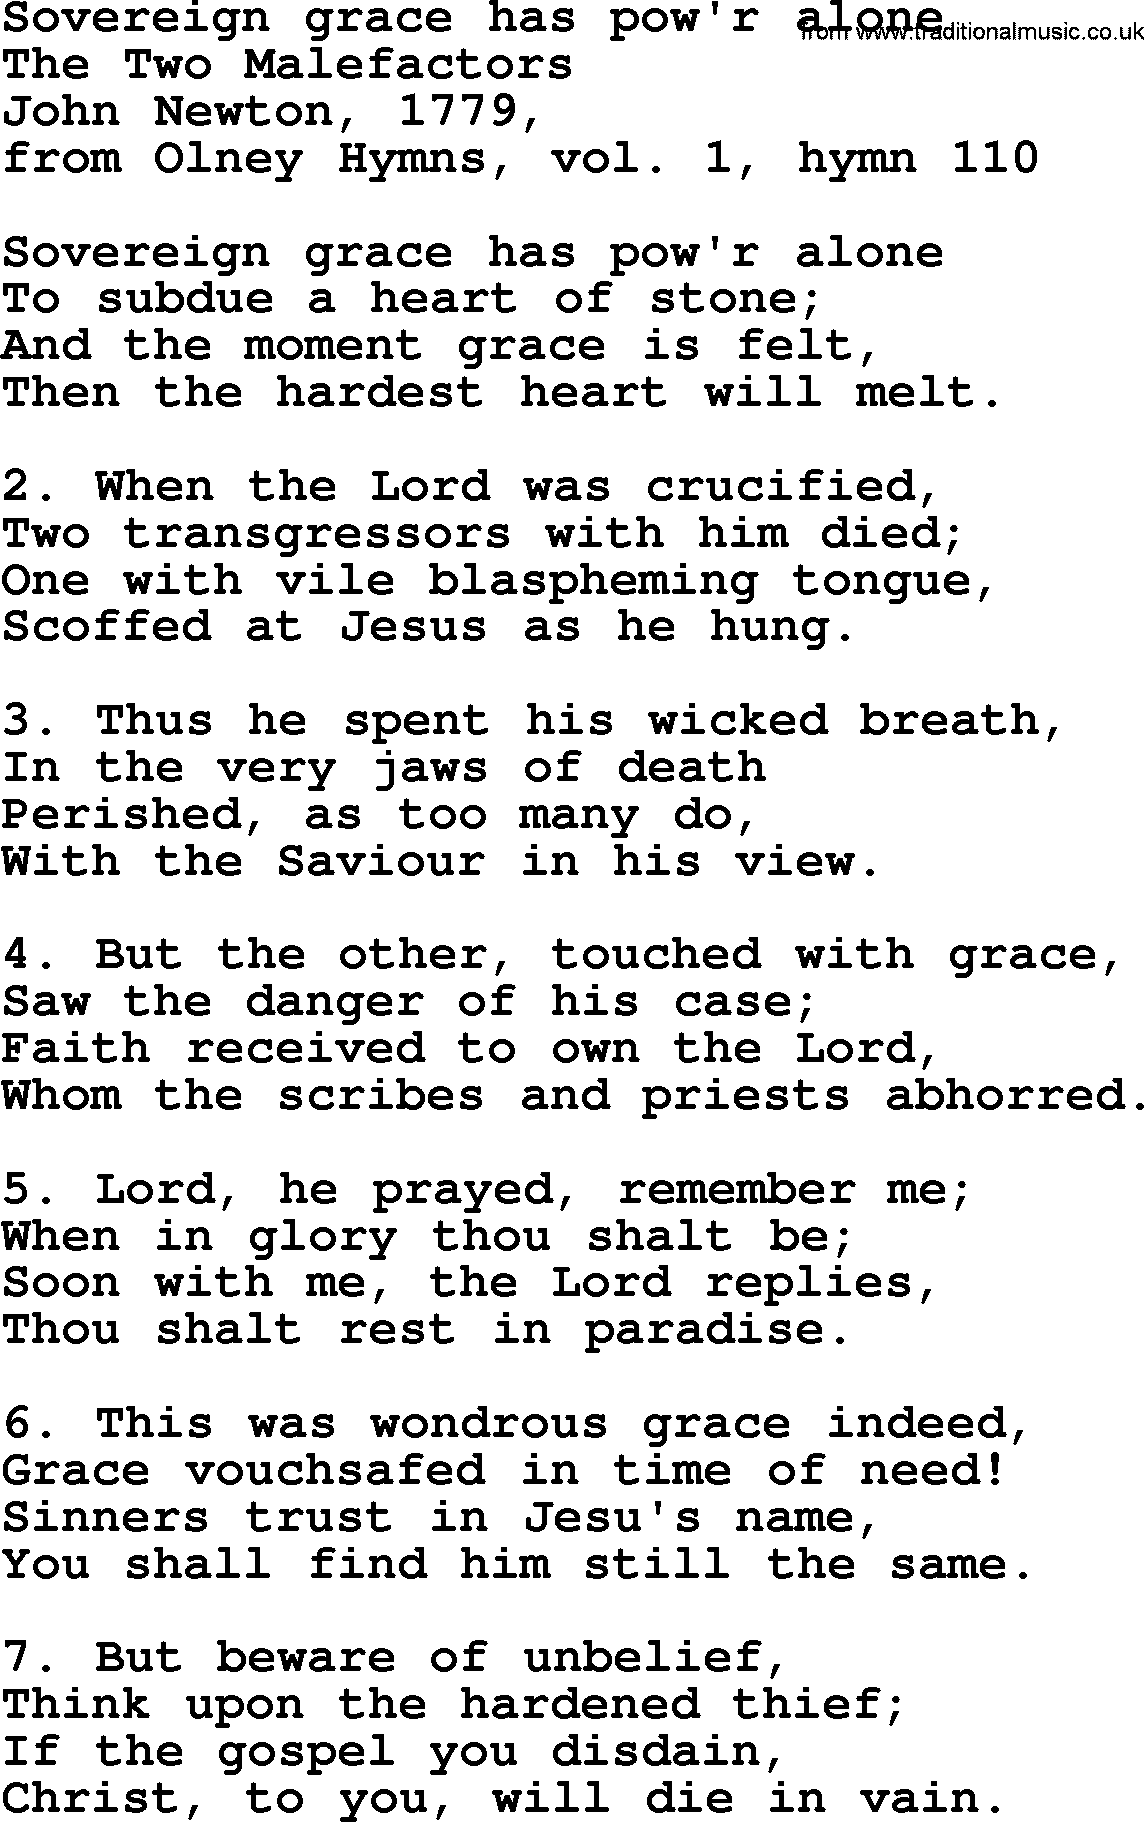 John Newton hymn: Sovereign Grace Has Pow'r Alone, lyrics